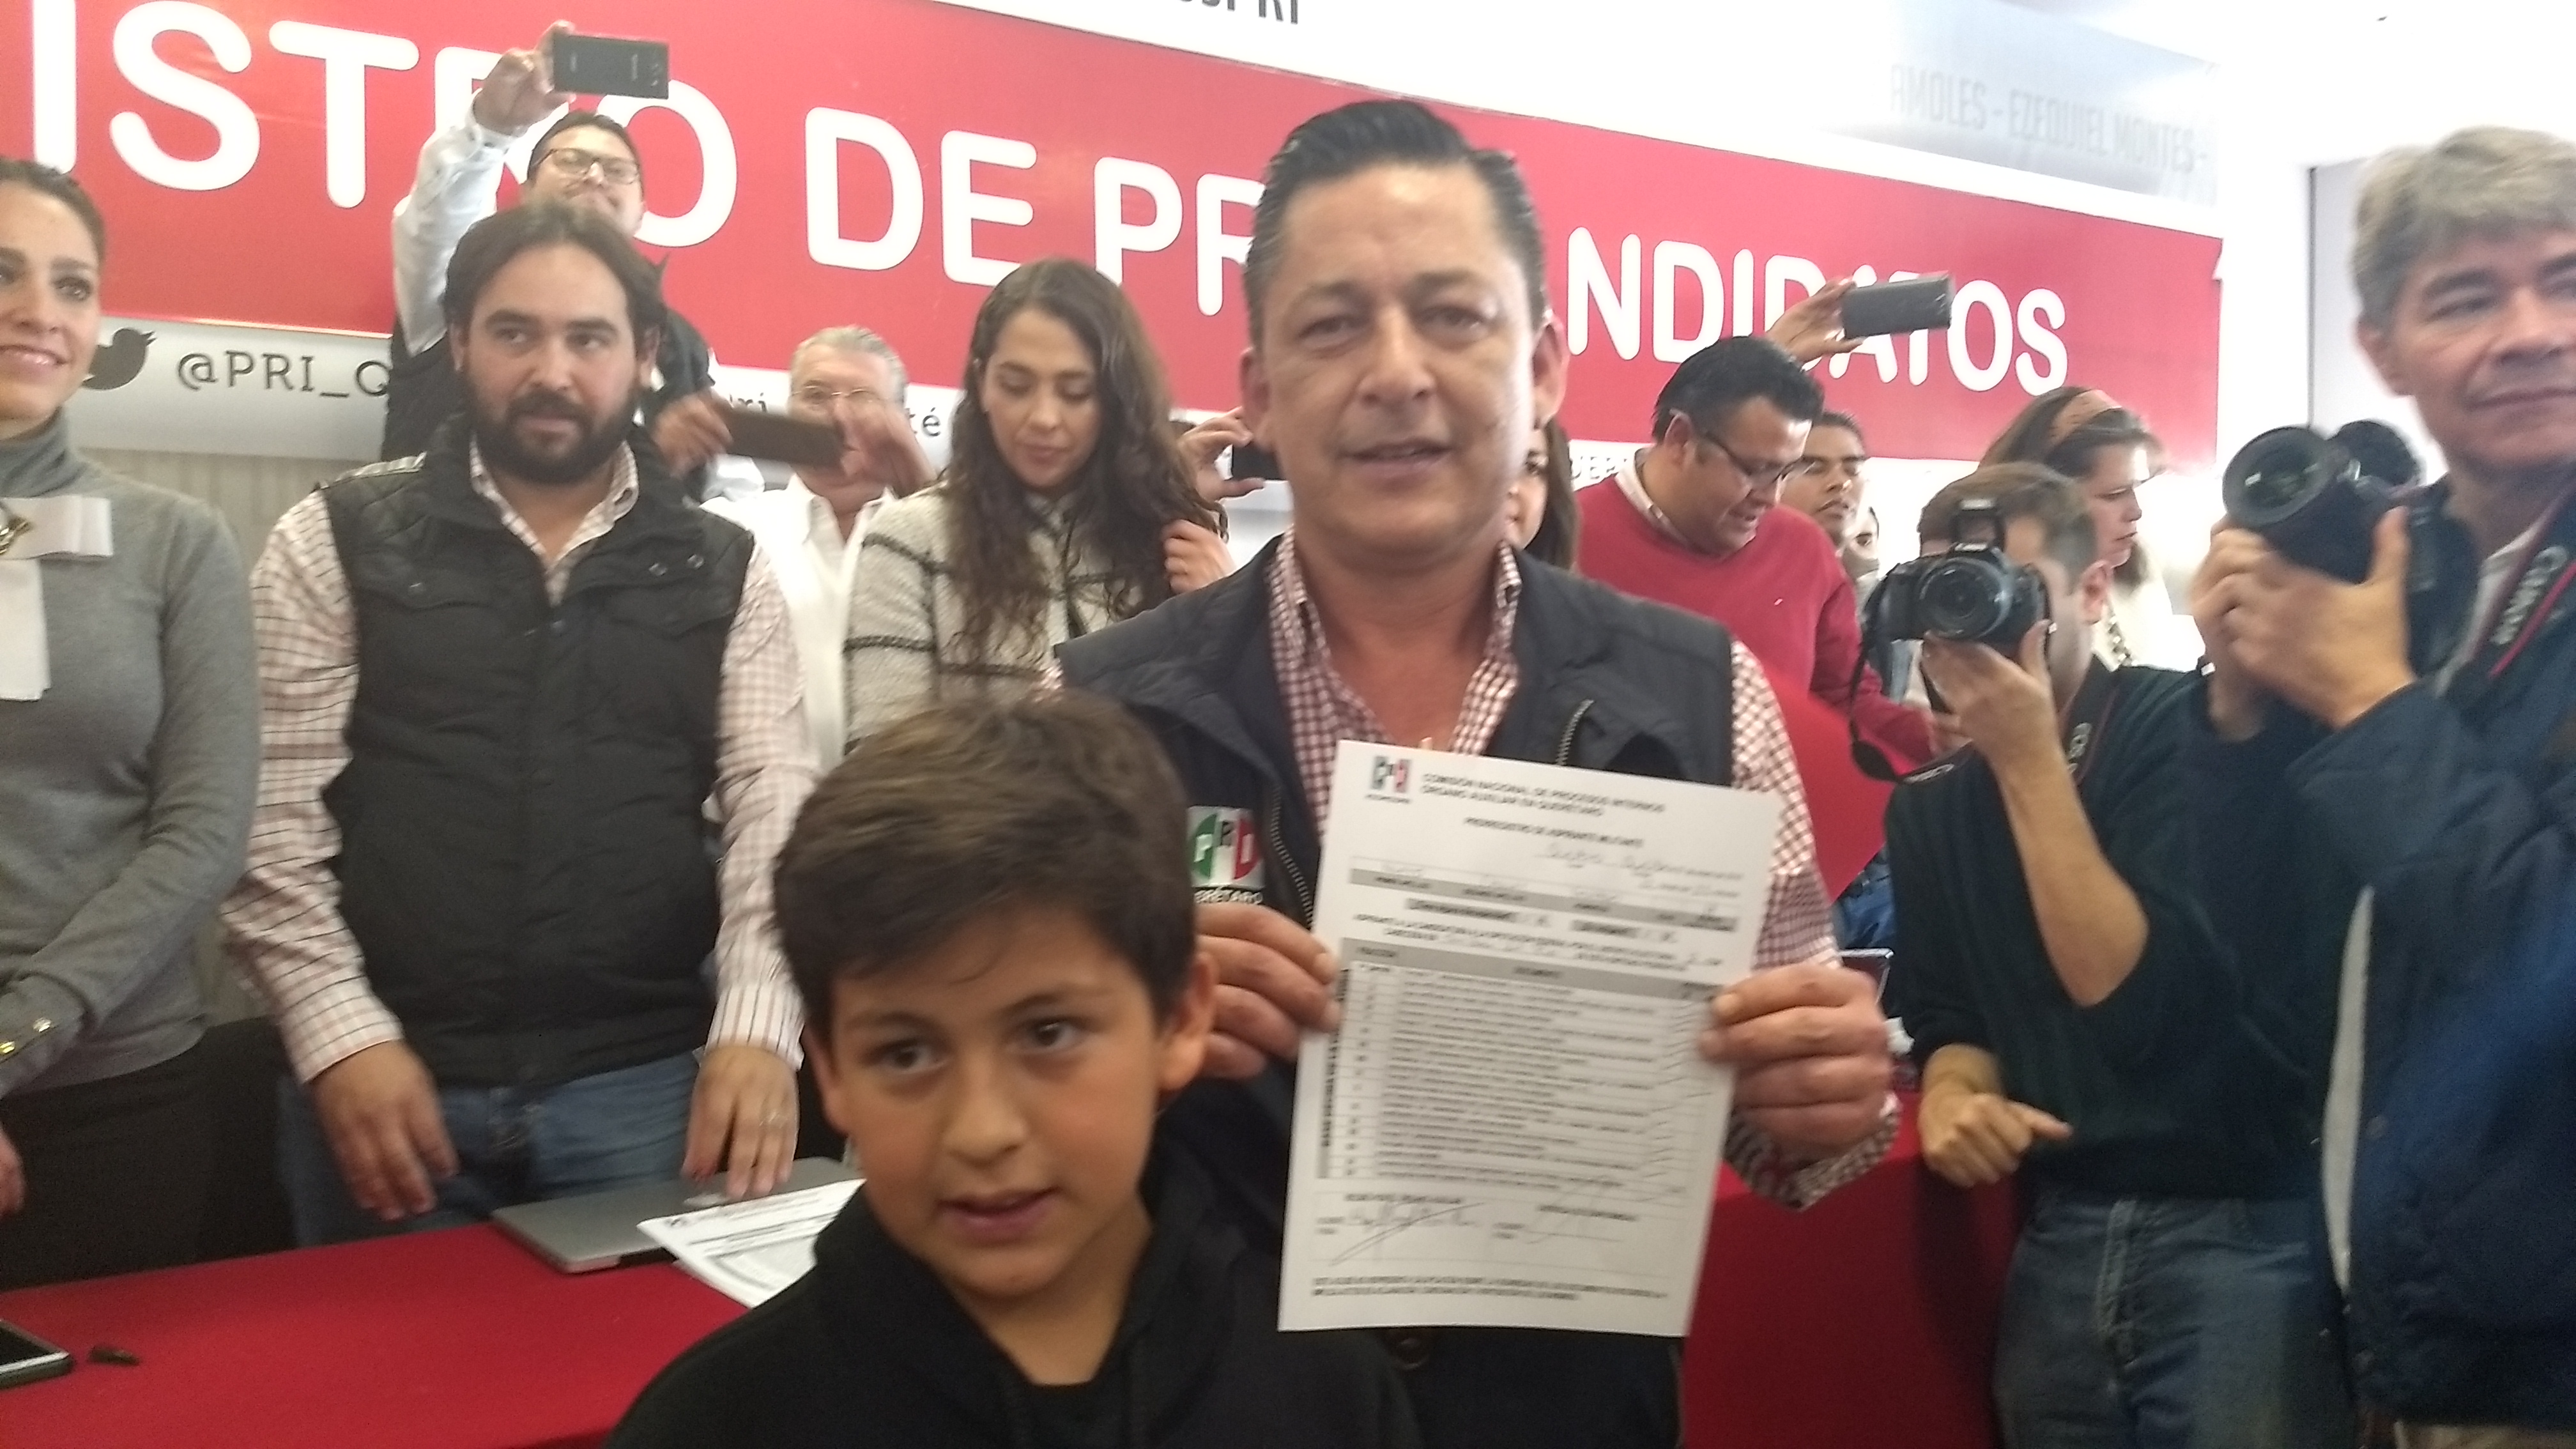  Gustavo Nieto, David Palacios y ‘Chicovel’ Alcocer ya son precandidatos a una diputación federal del PRI